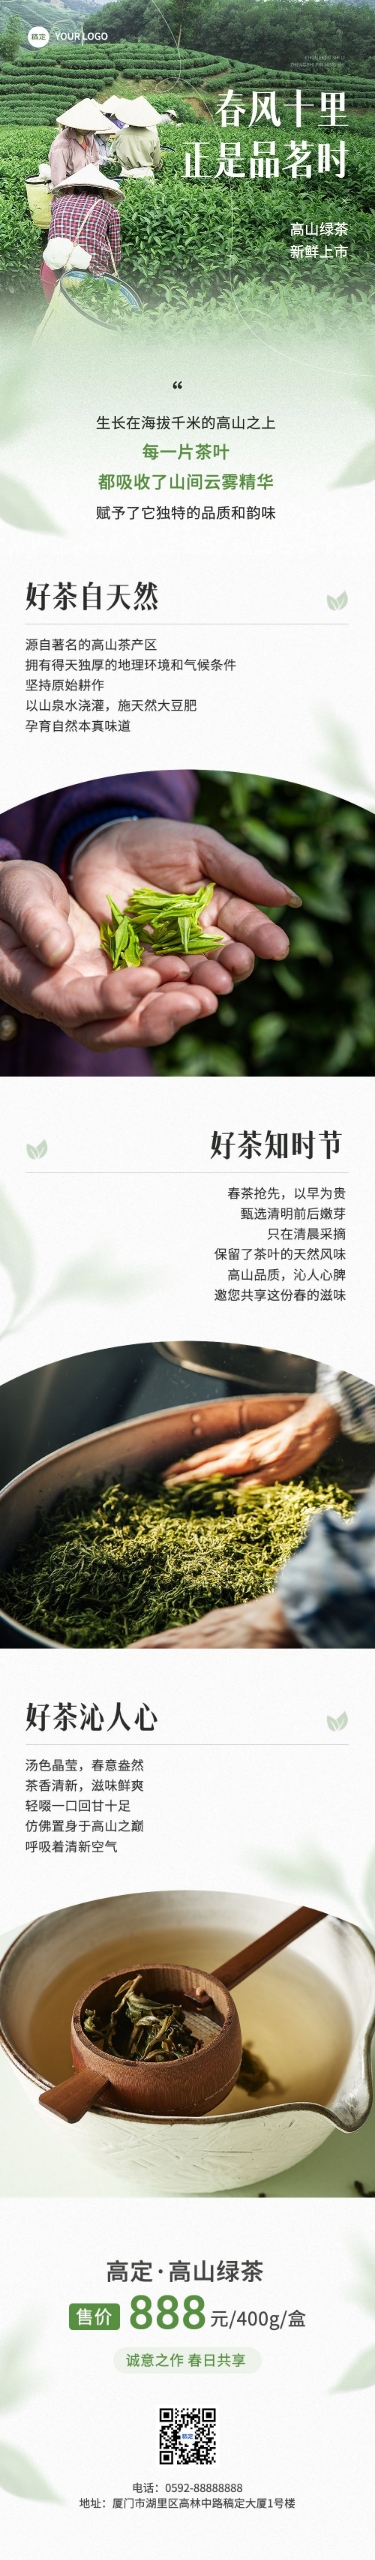 茶叶促销宣传微信公众号文章长图AIGC预览效果